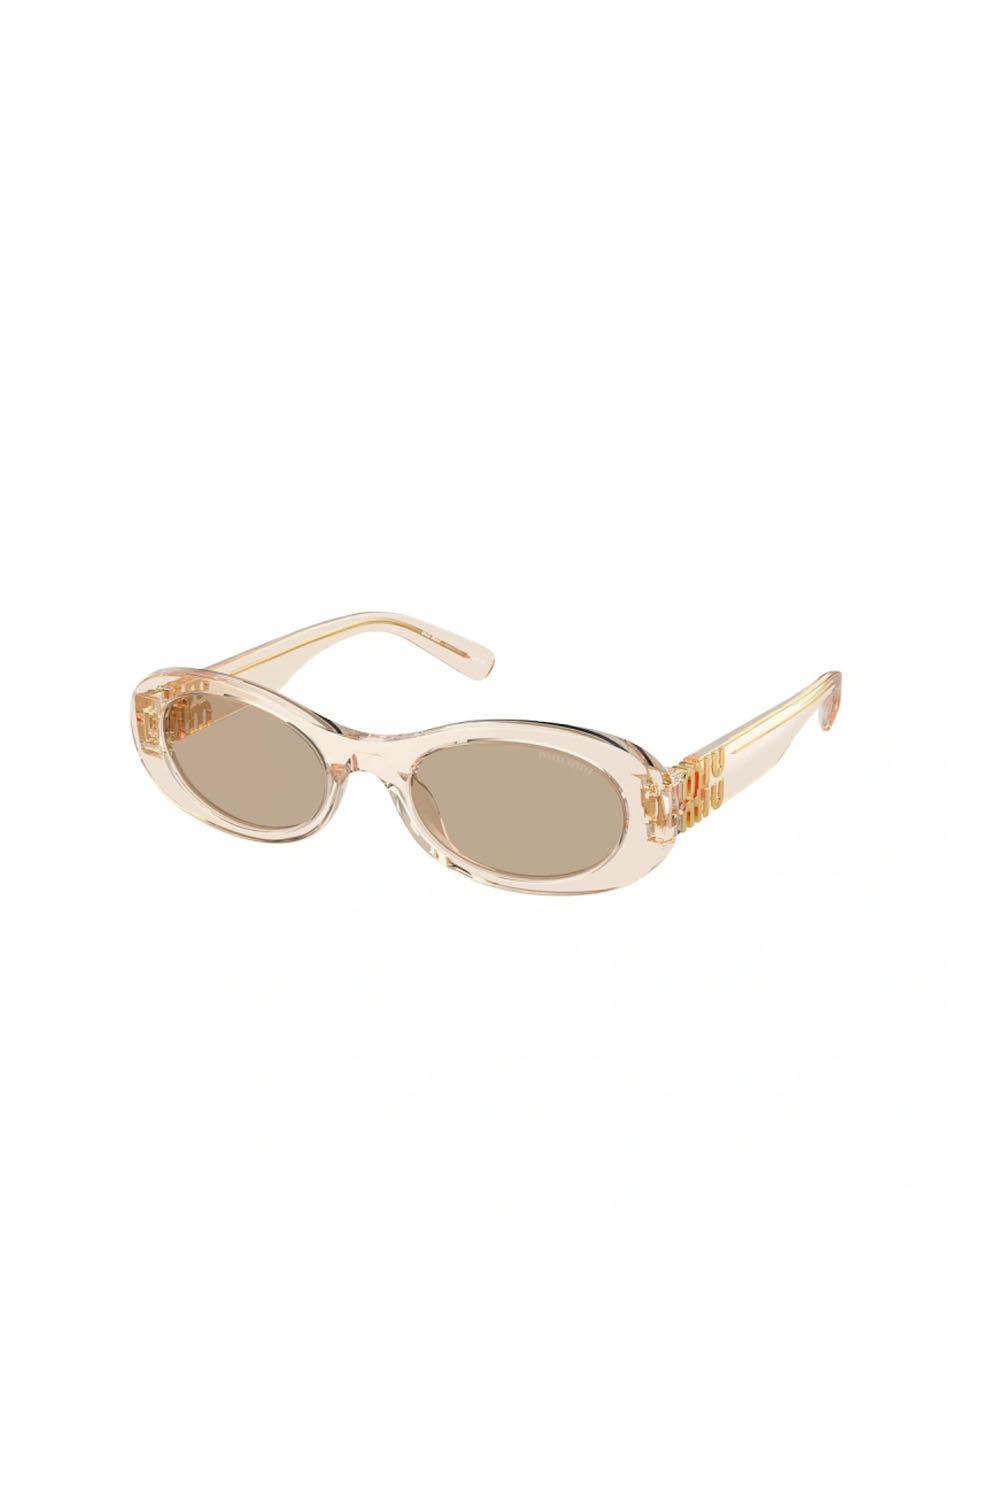 Miu Miu Sunglasses MU 06ZS Noisette Transparent Dark Brown Lens